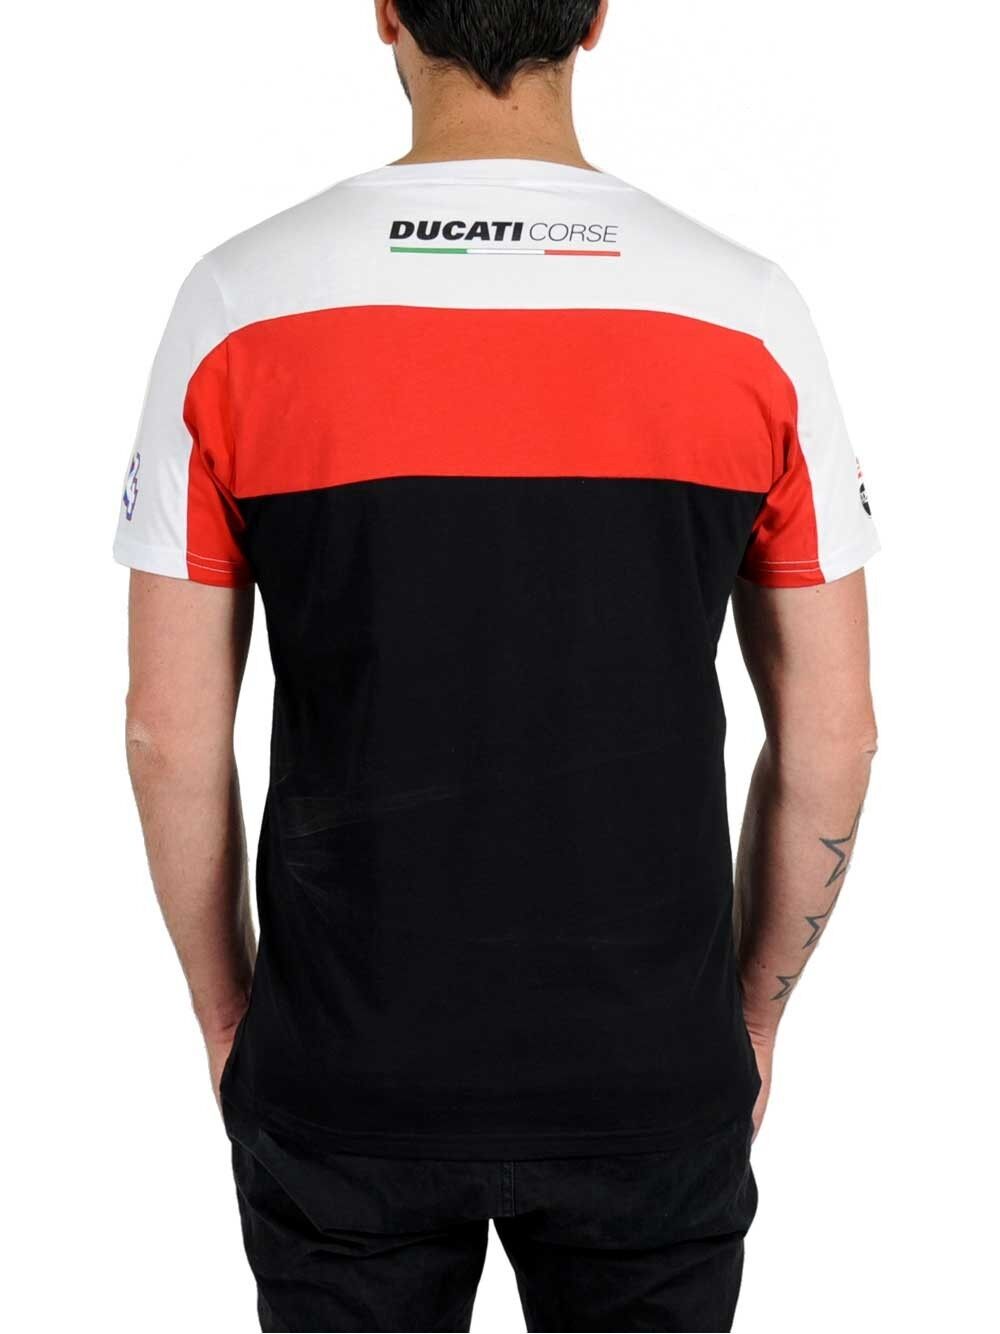 New Official Ducati Andrea Dovizioso T'Shirt - 15 36007